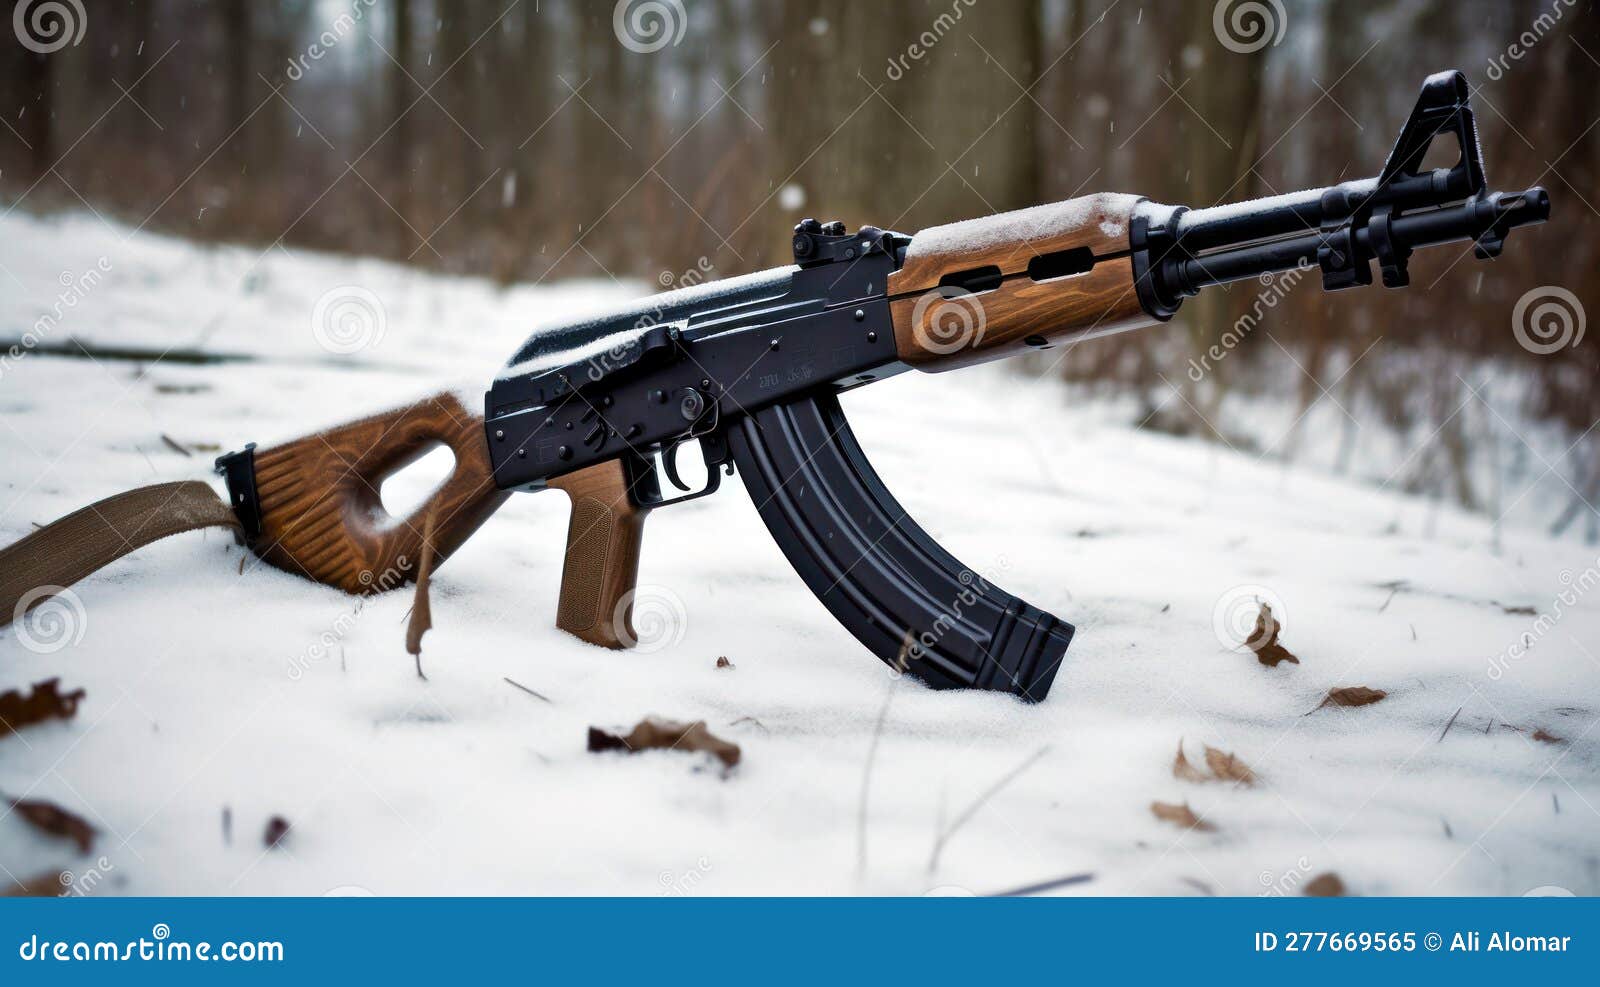 Airsoft Tactical AK47 guns military rifles airsoft HD wallpaper   Peakpx